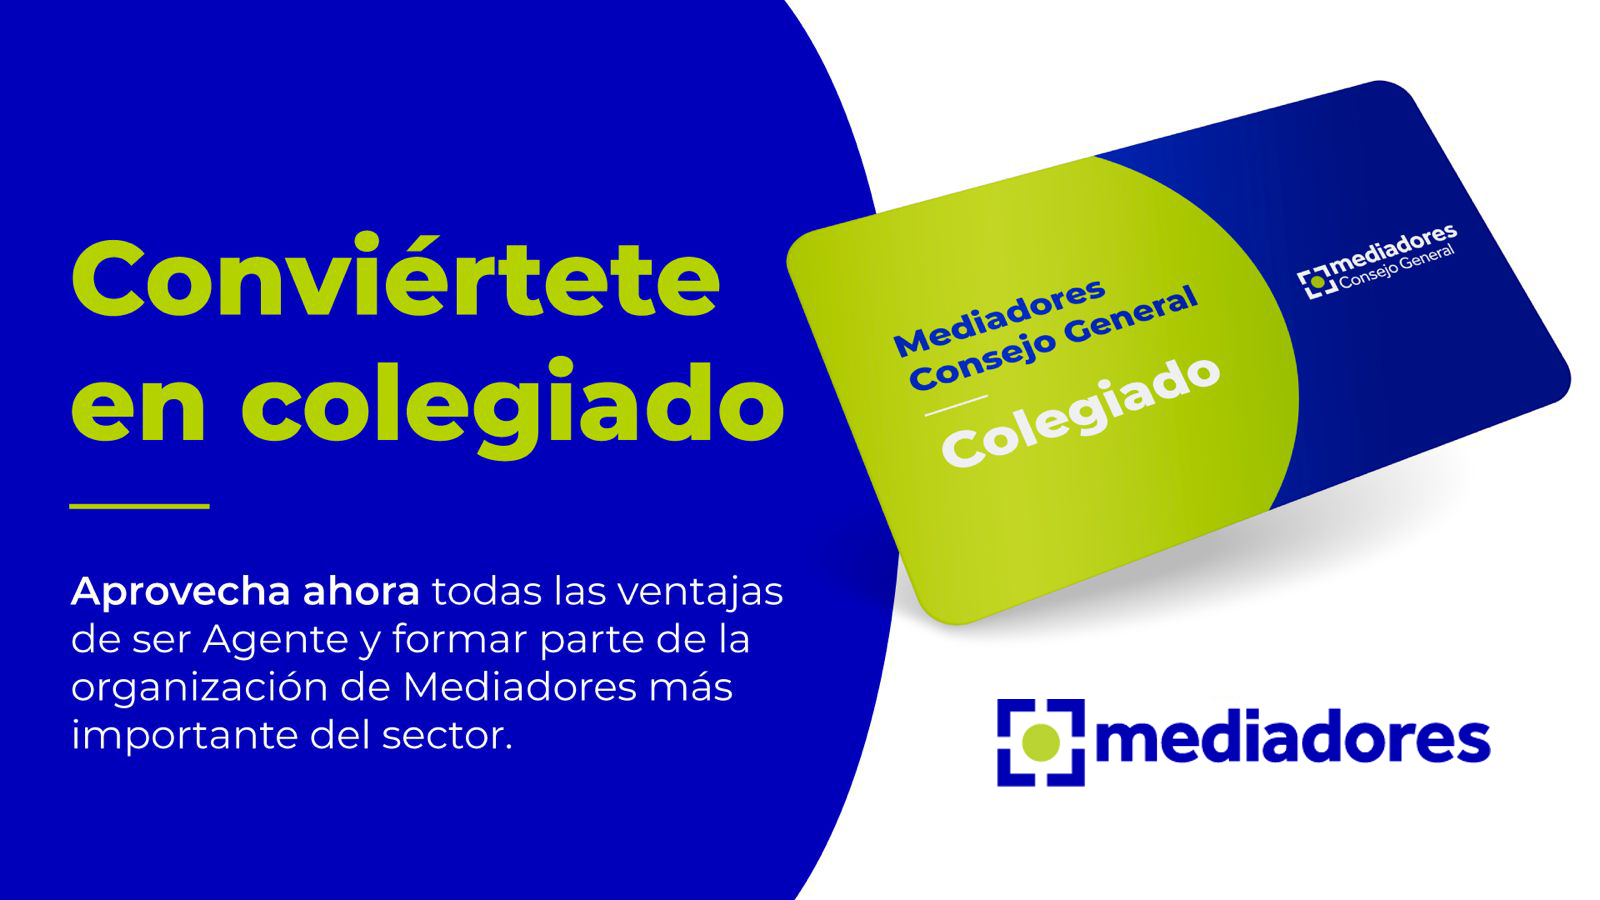 Los Colegios de Mediadores ponen en marcha una campaña de colegiación destinada a agentes de seguros